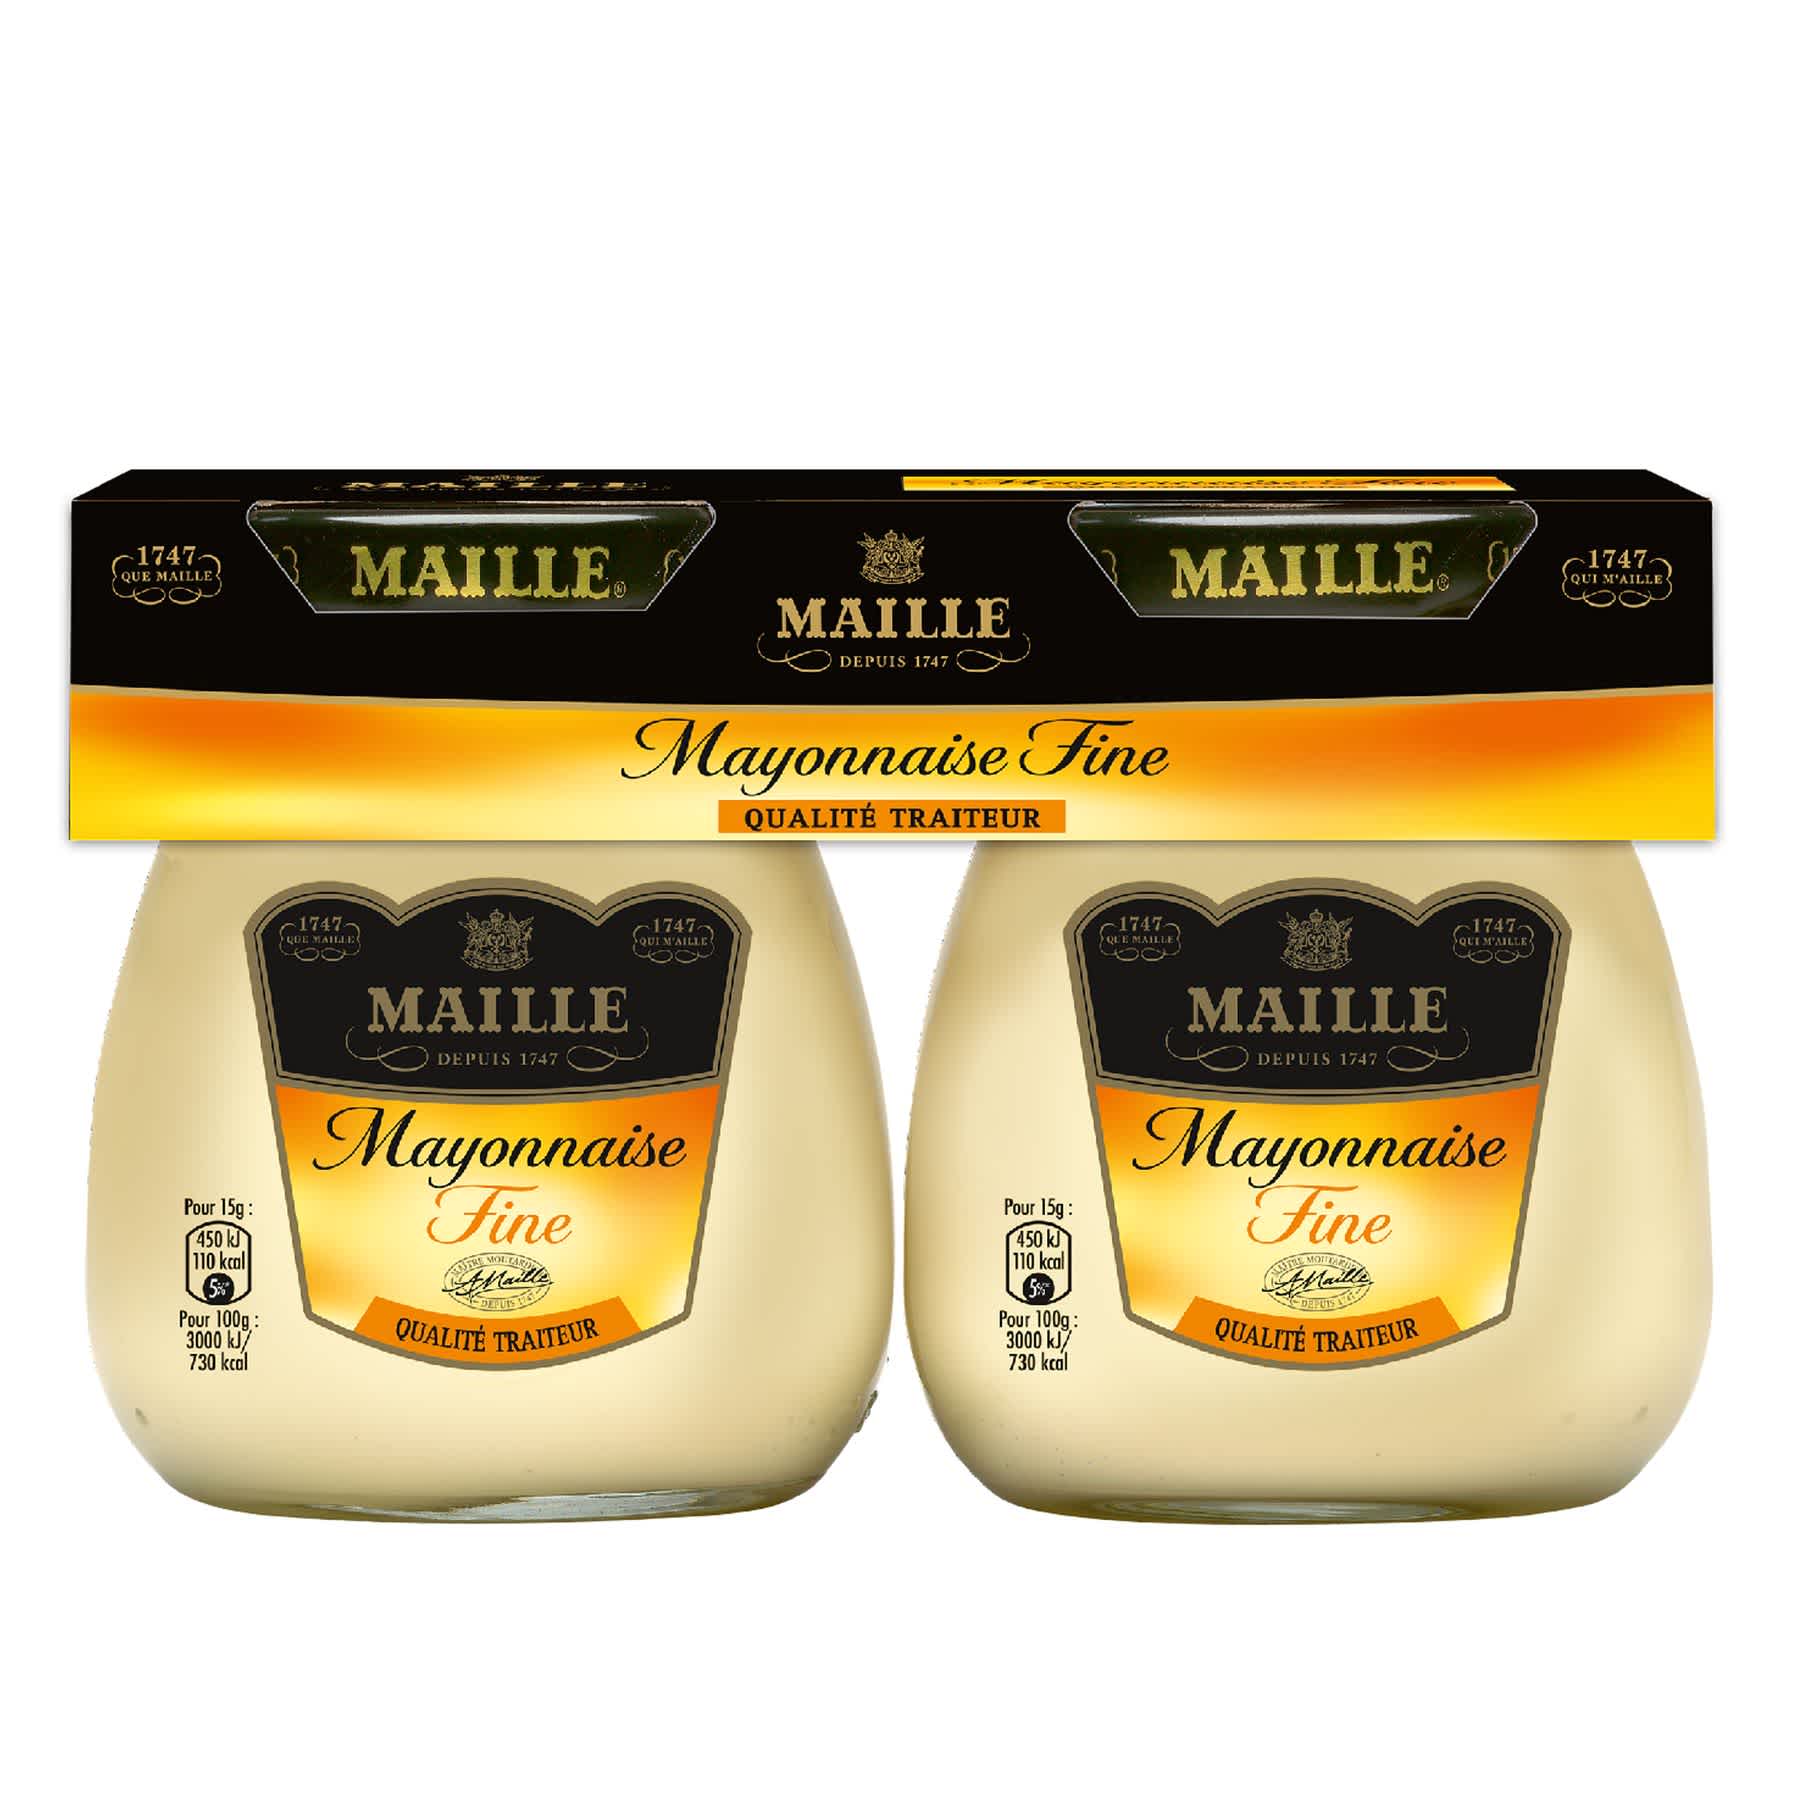 Maille - Mayonnaise Fine Fraiche Qualité Traiteur au rayon frais 2 x 125 g, overview